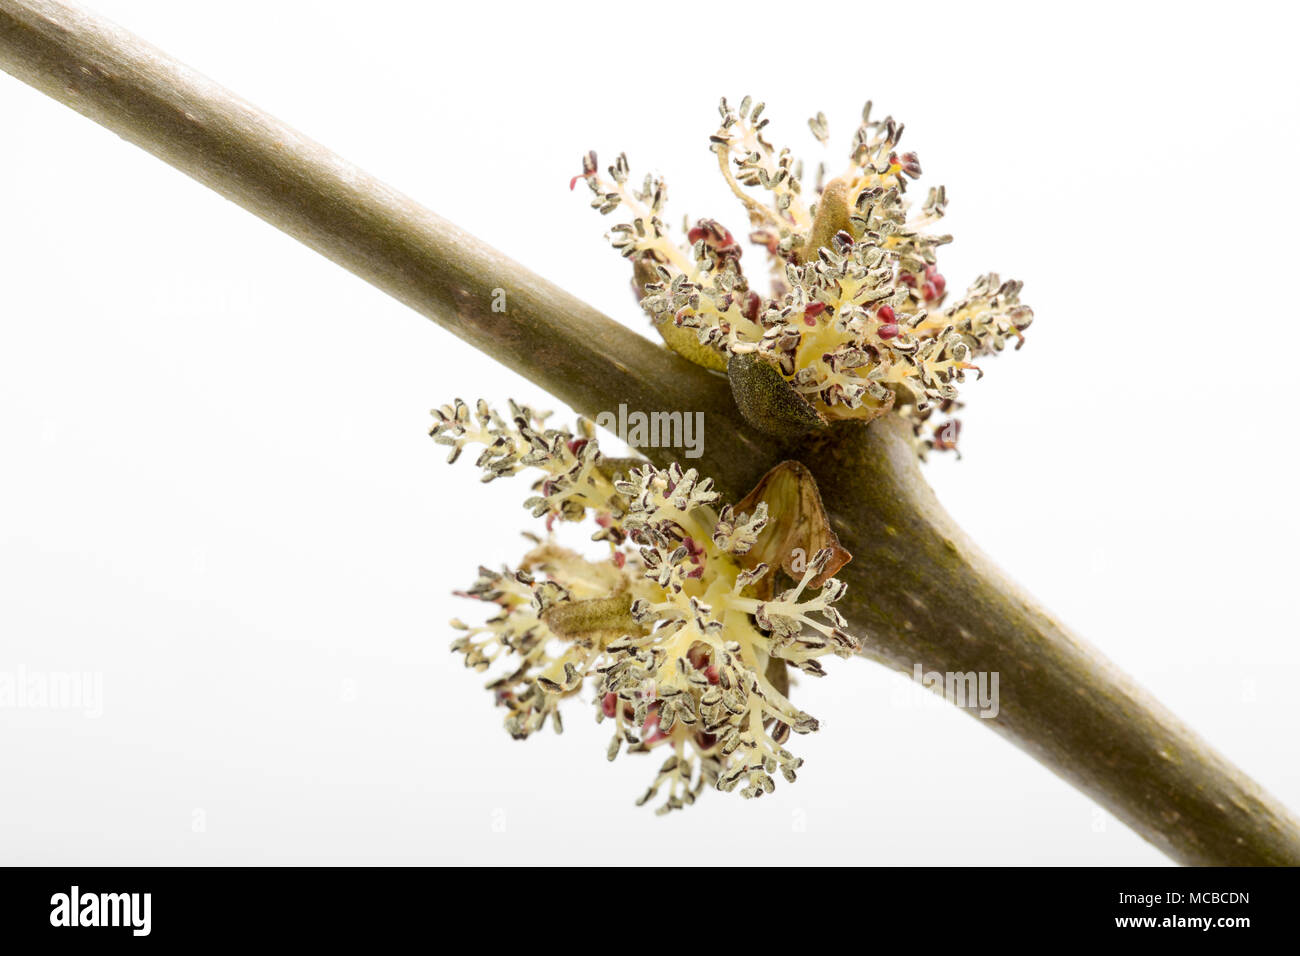 Les fleurs de l'arbre frêne Fraxinus excelsior 15 avril 2018 Dorset England UK. Comme disait l'ancien chêne, frêne avant de tremper dans un chêne, frêne avant, en f Banque D'Images